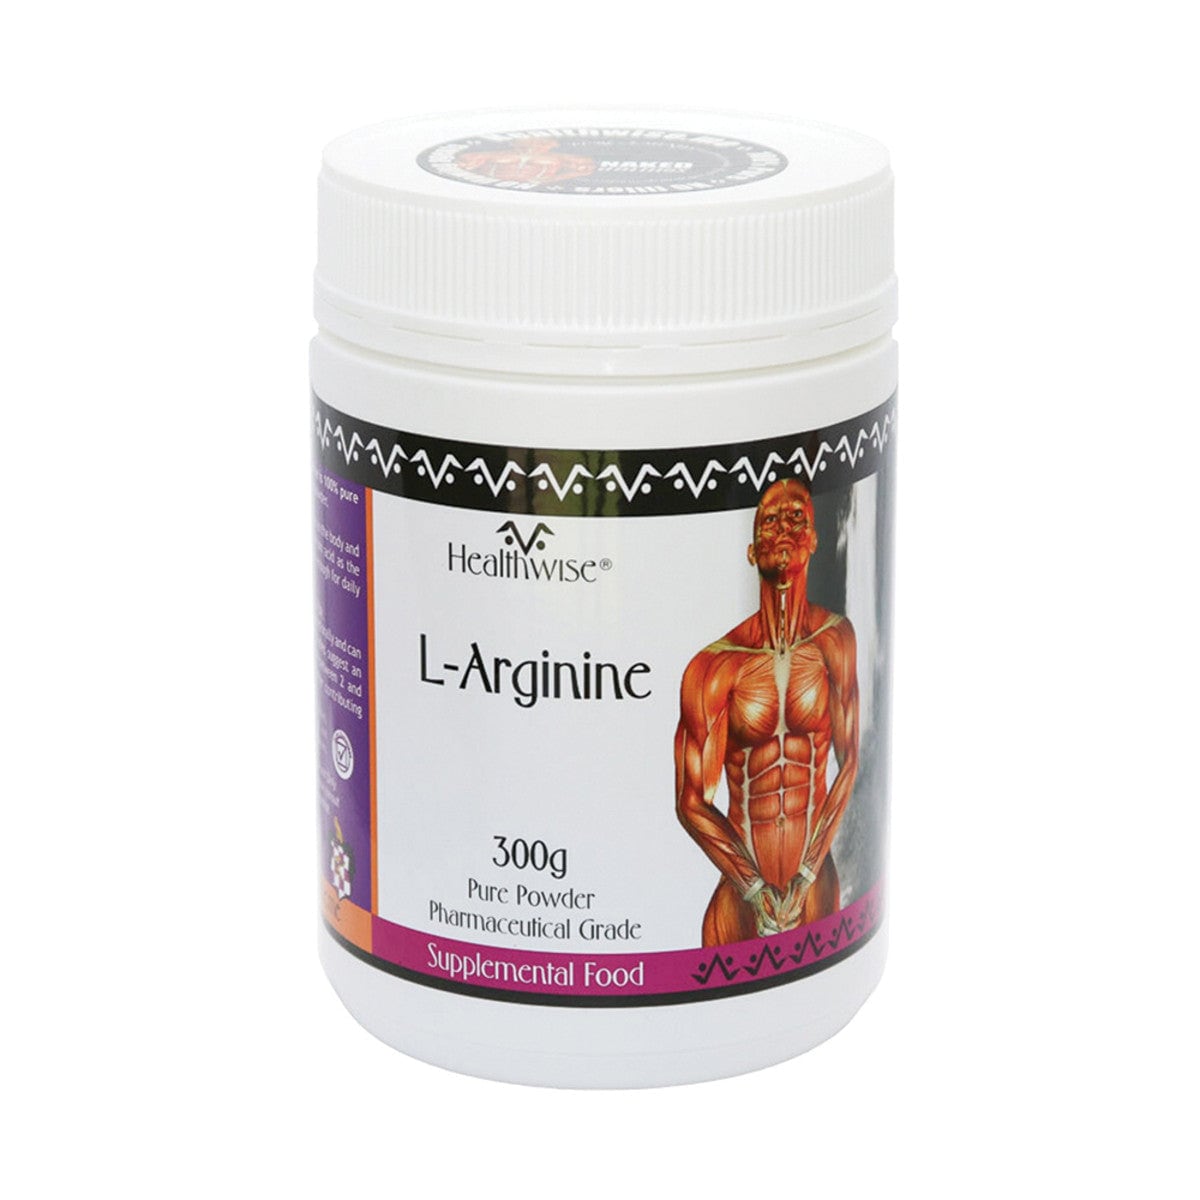 Healthwise L-Arginine Powder 300g